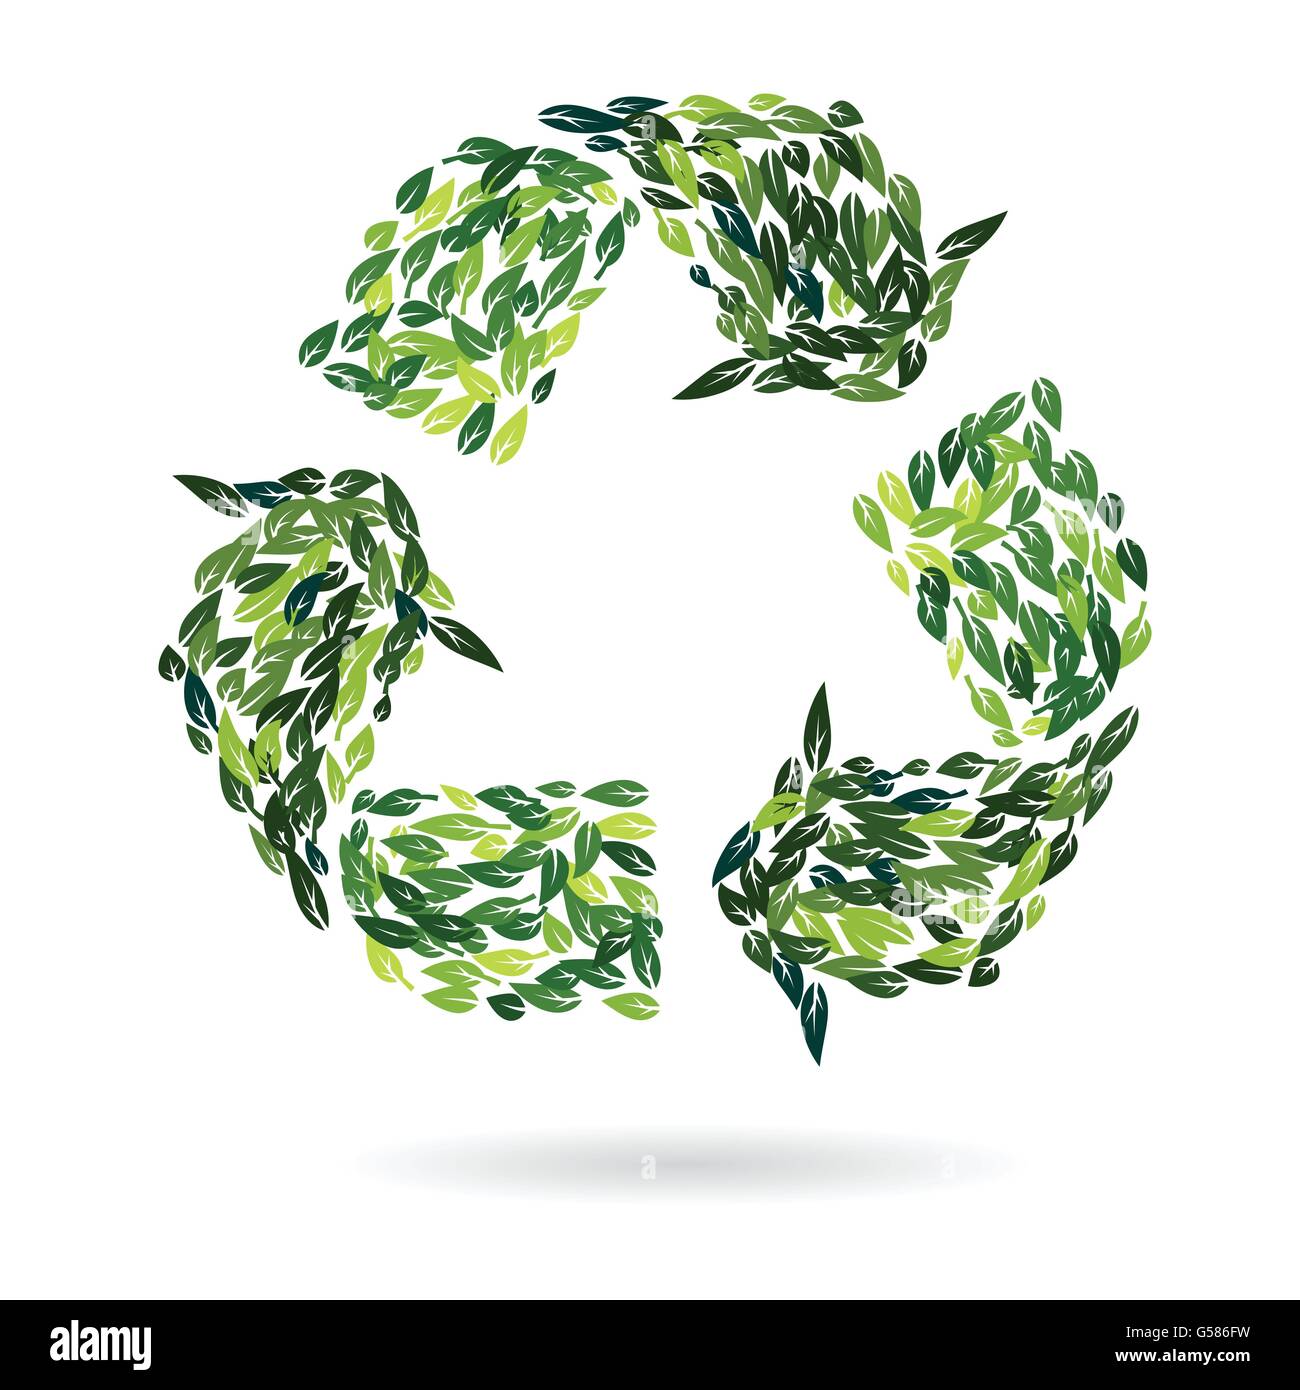 Signo de reciclaje de verano verdes hojas como concepto de protección del medio ambiente diseño ilustración vectorial Ilustración del Vector